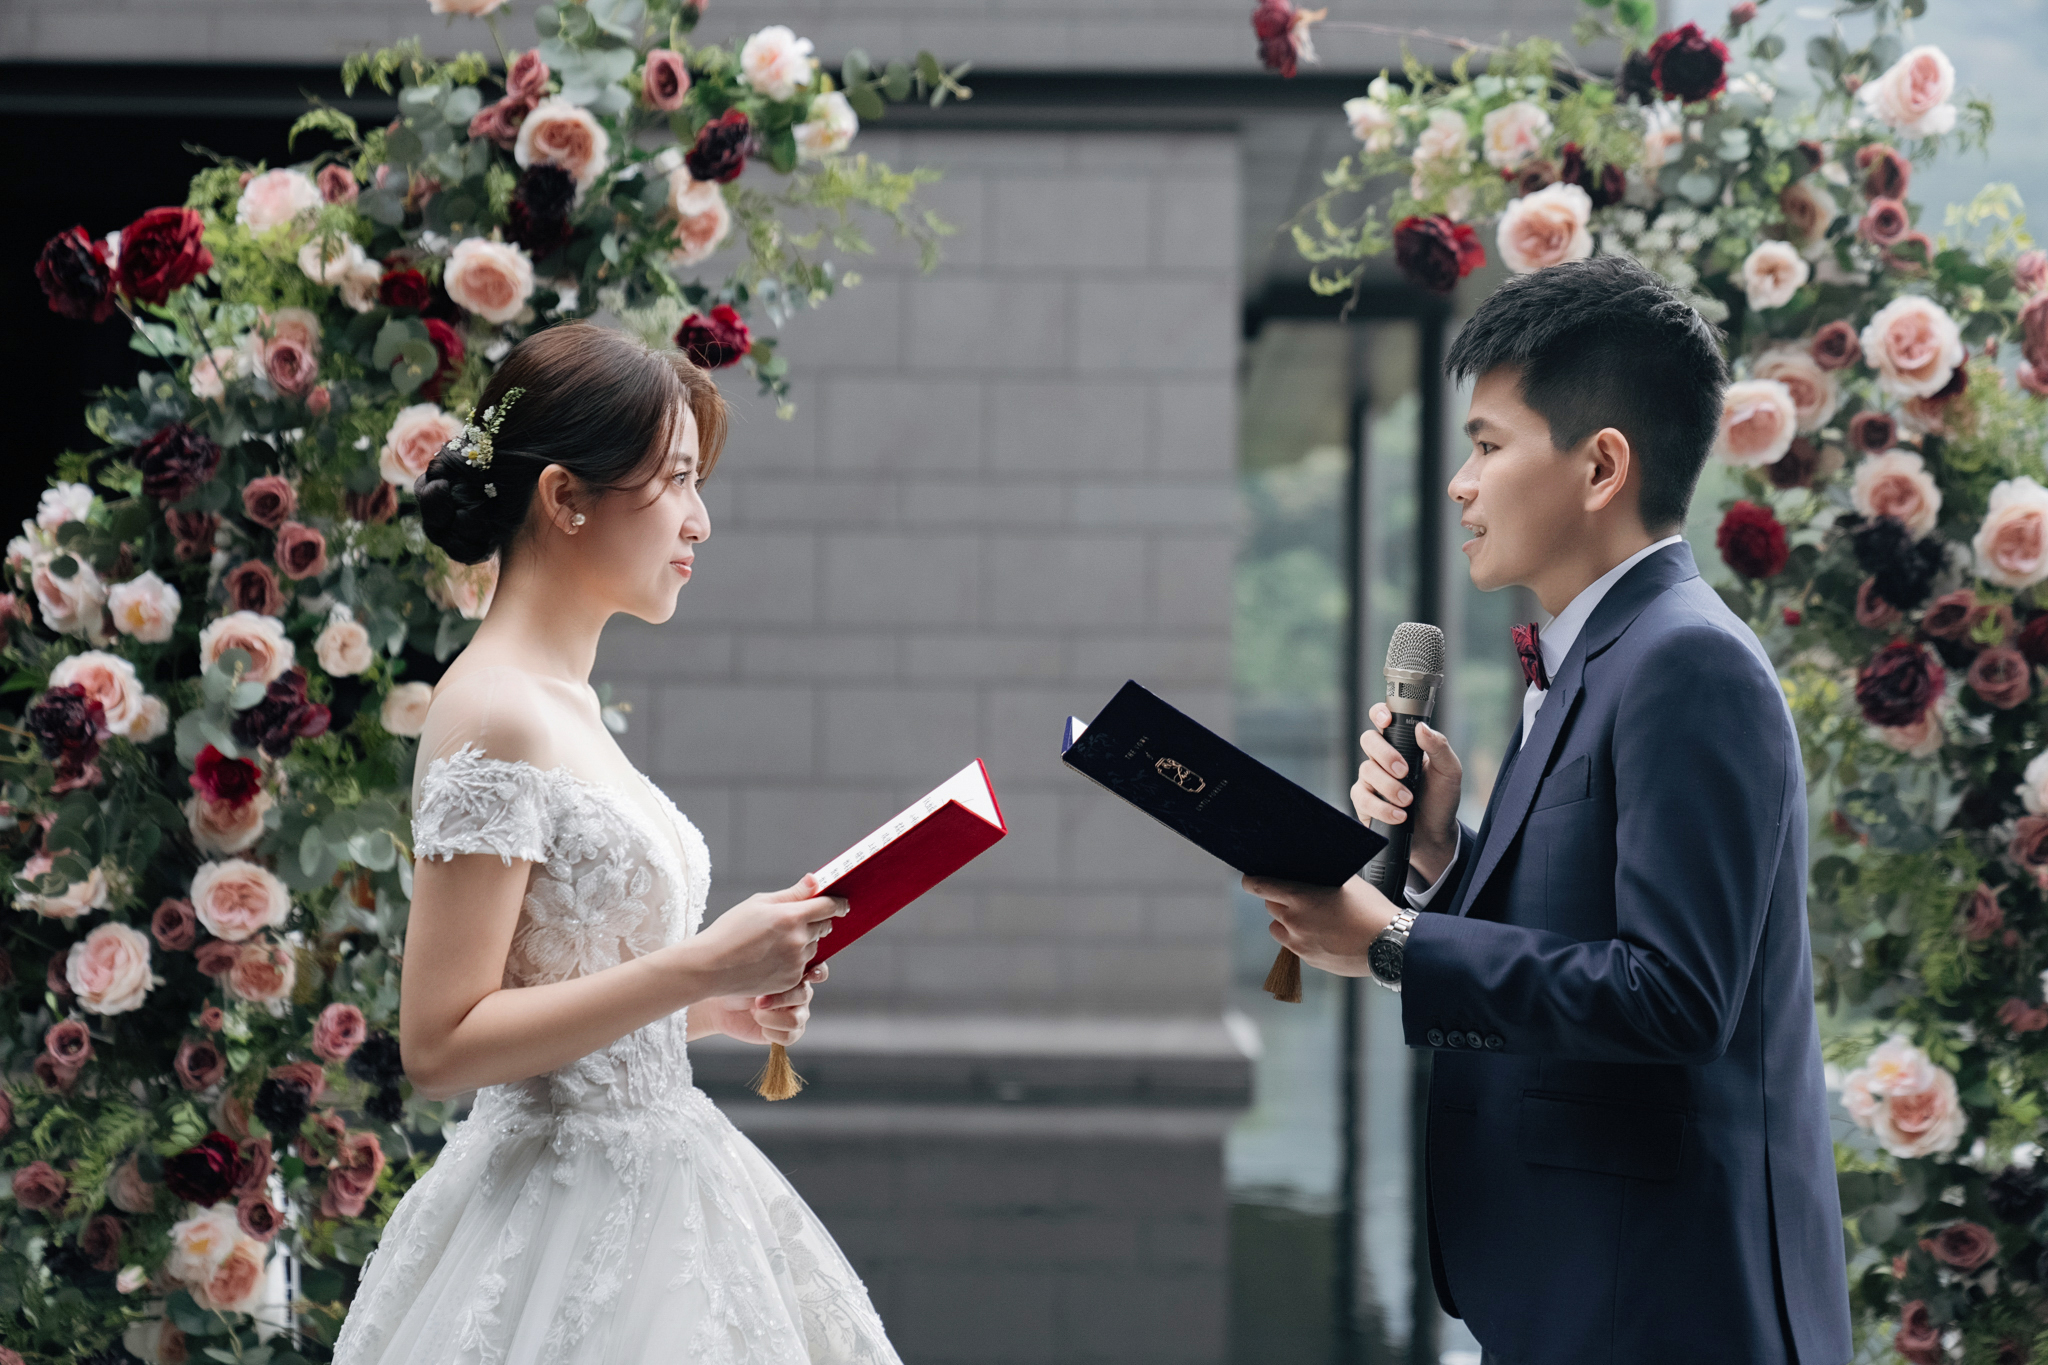 北投麗禧溫泉酒店, EW, Donfer, 東法, 台北婚攝, 婚禮紀錄